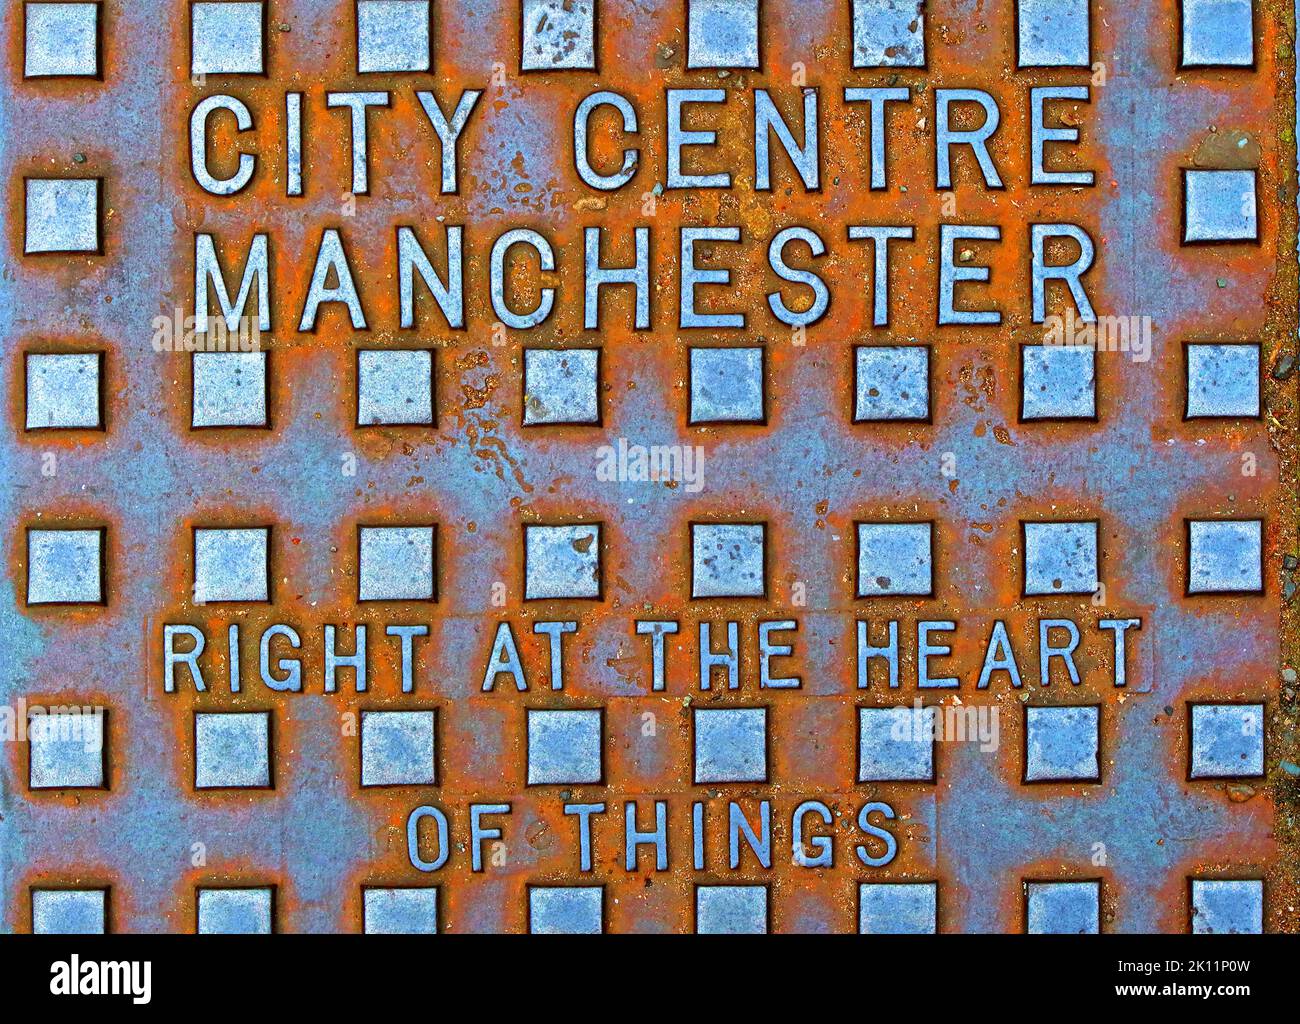 Centre-ville de Manchester, au cœur des choses, grille en fonte gaufrée, Manchester, Lancashire, Angleterre, Royaume-Uni, M1 1SH Banque D'Images